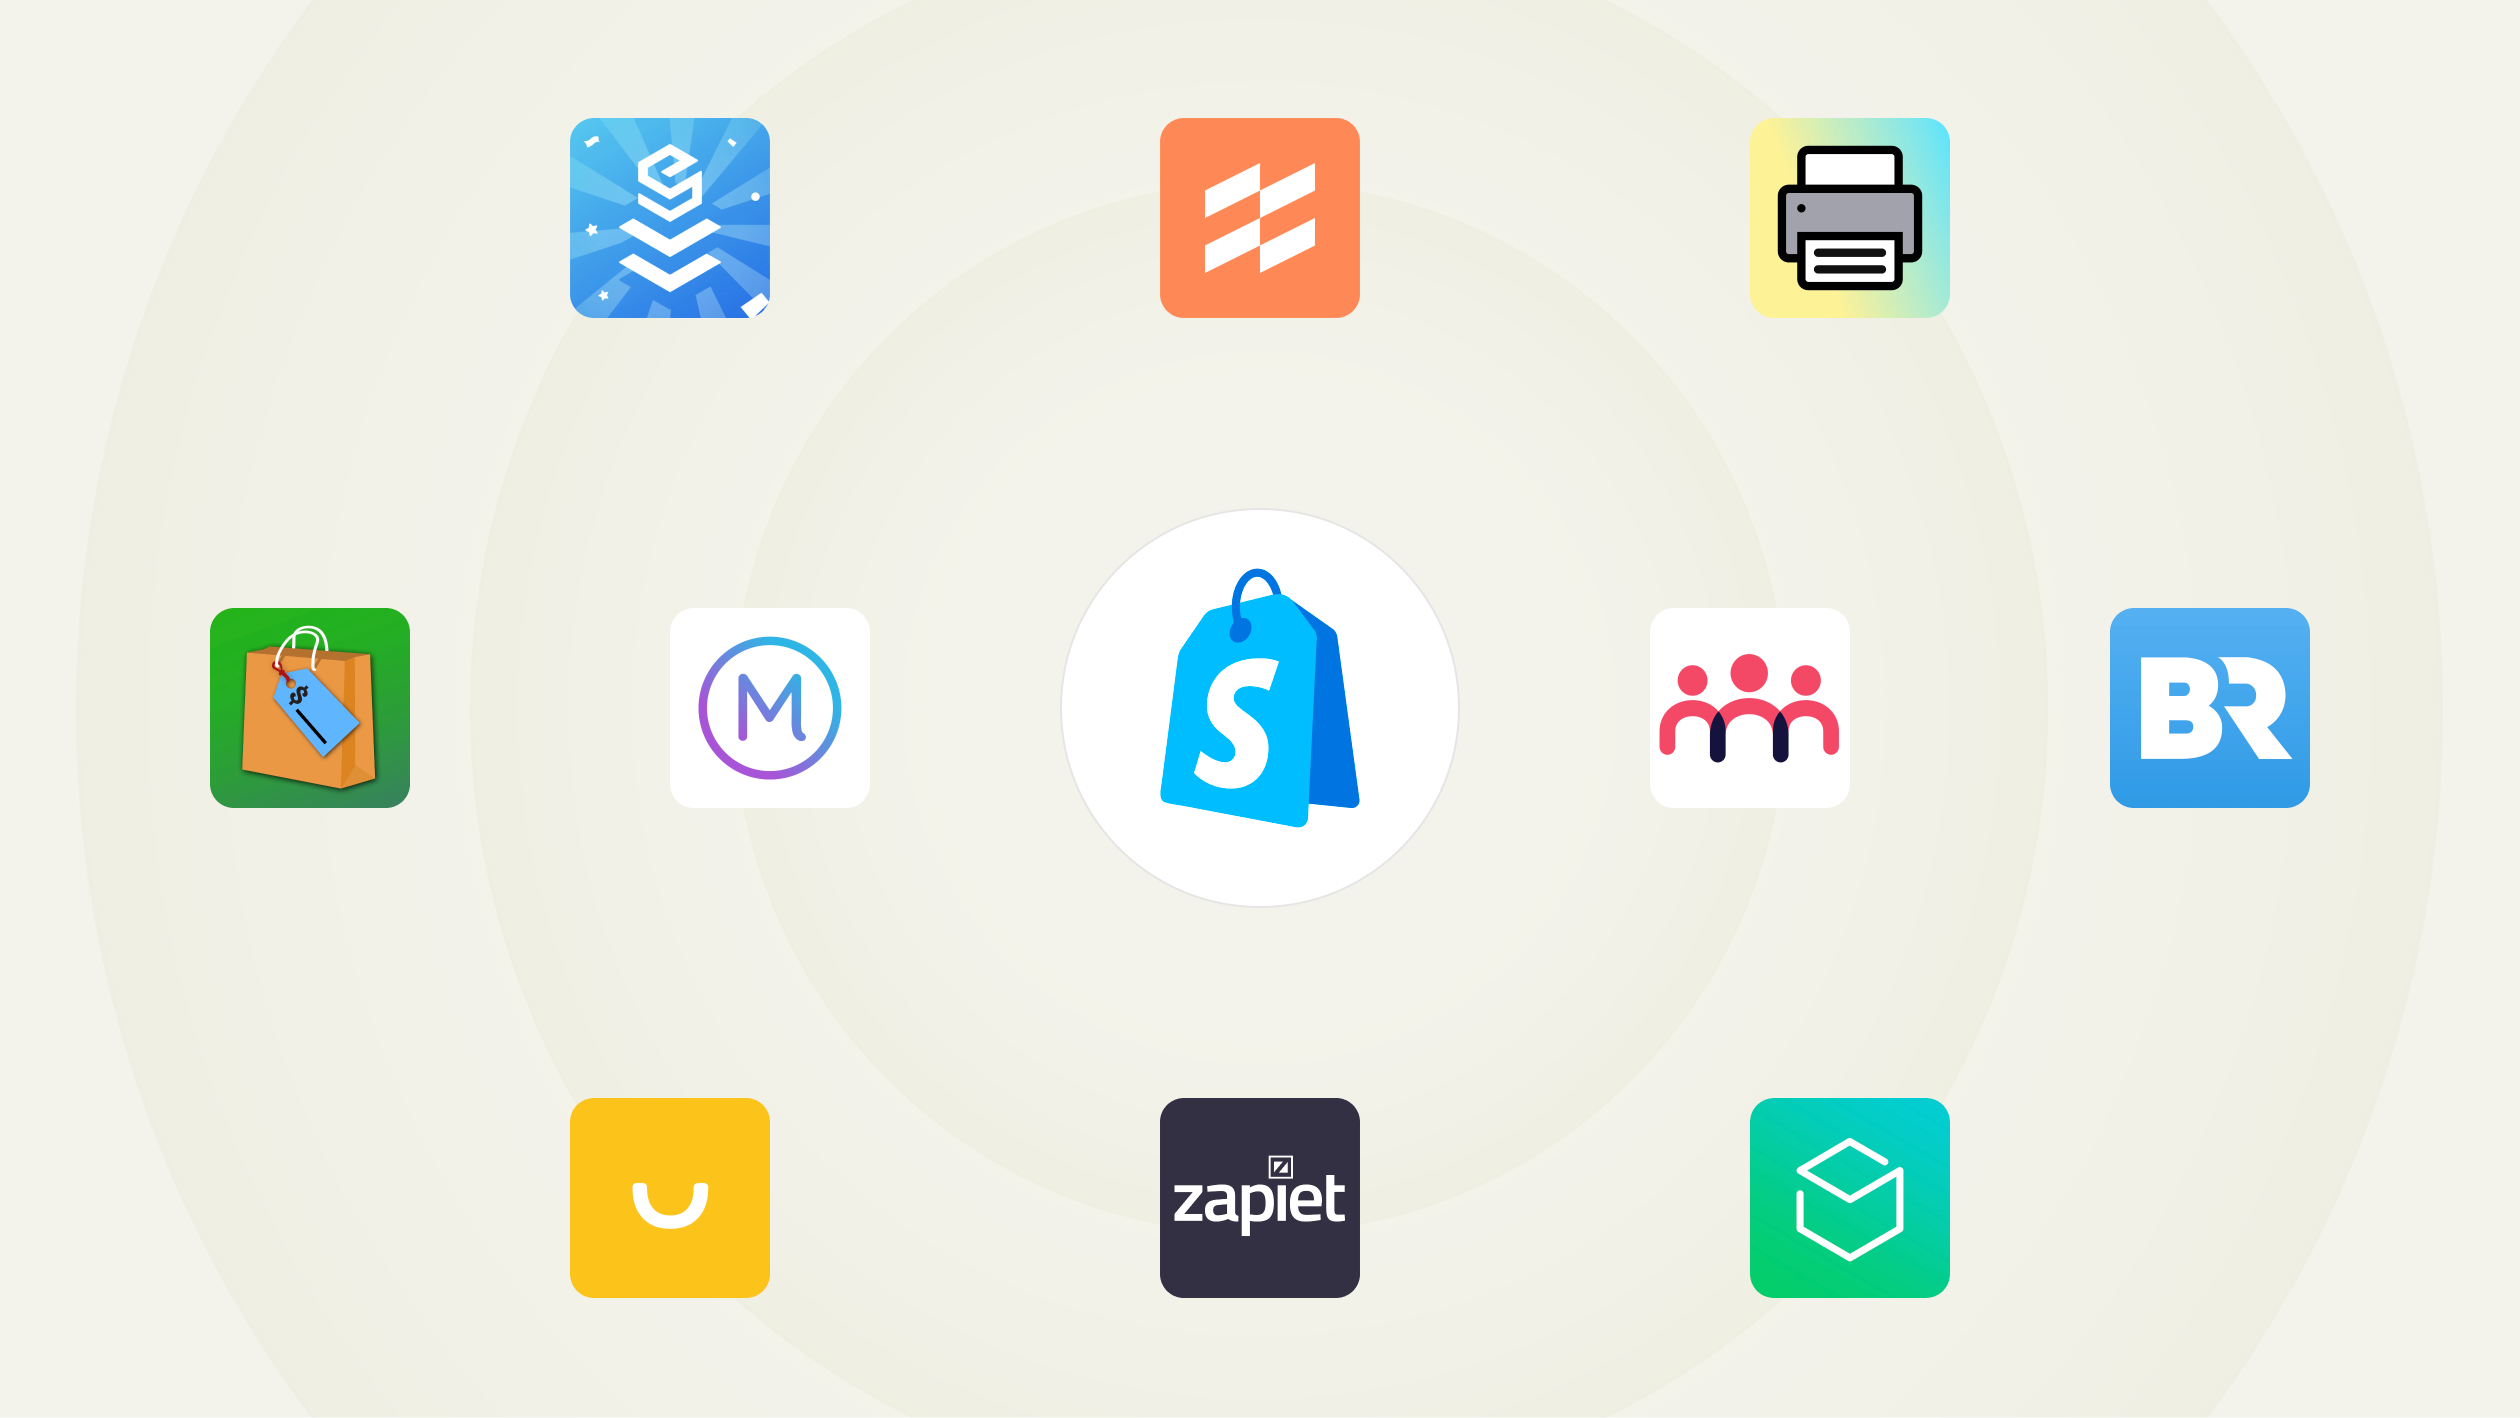 Une série d’icônes d’applications. Au milieu se trouve le logo de Shopify PDV ; autour du logo se trouvent des icônes pour les applications populaires : EasyTeam, Filljoy, Zapiet, Optizio, Stocky, Order Printer, Smile, Better Reports, Marsello et Endear.